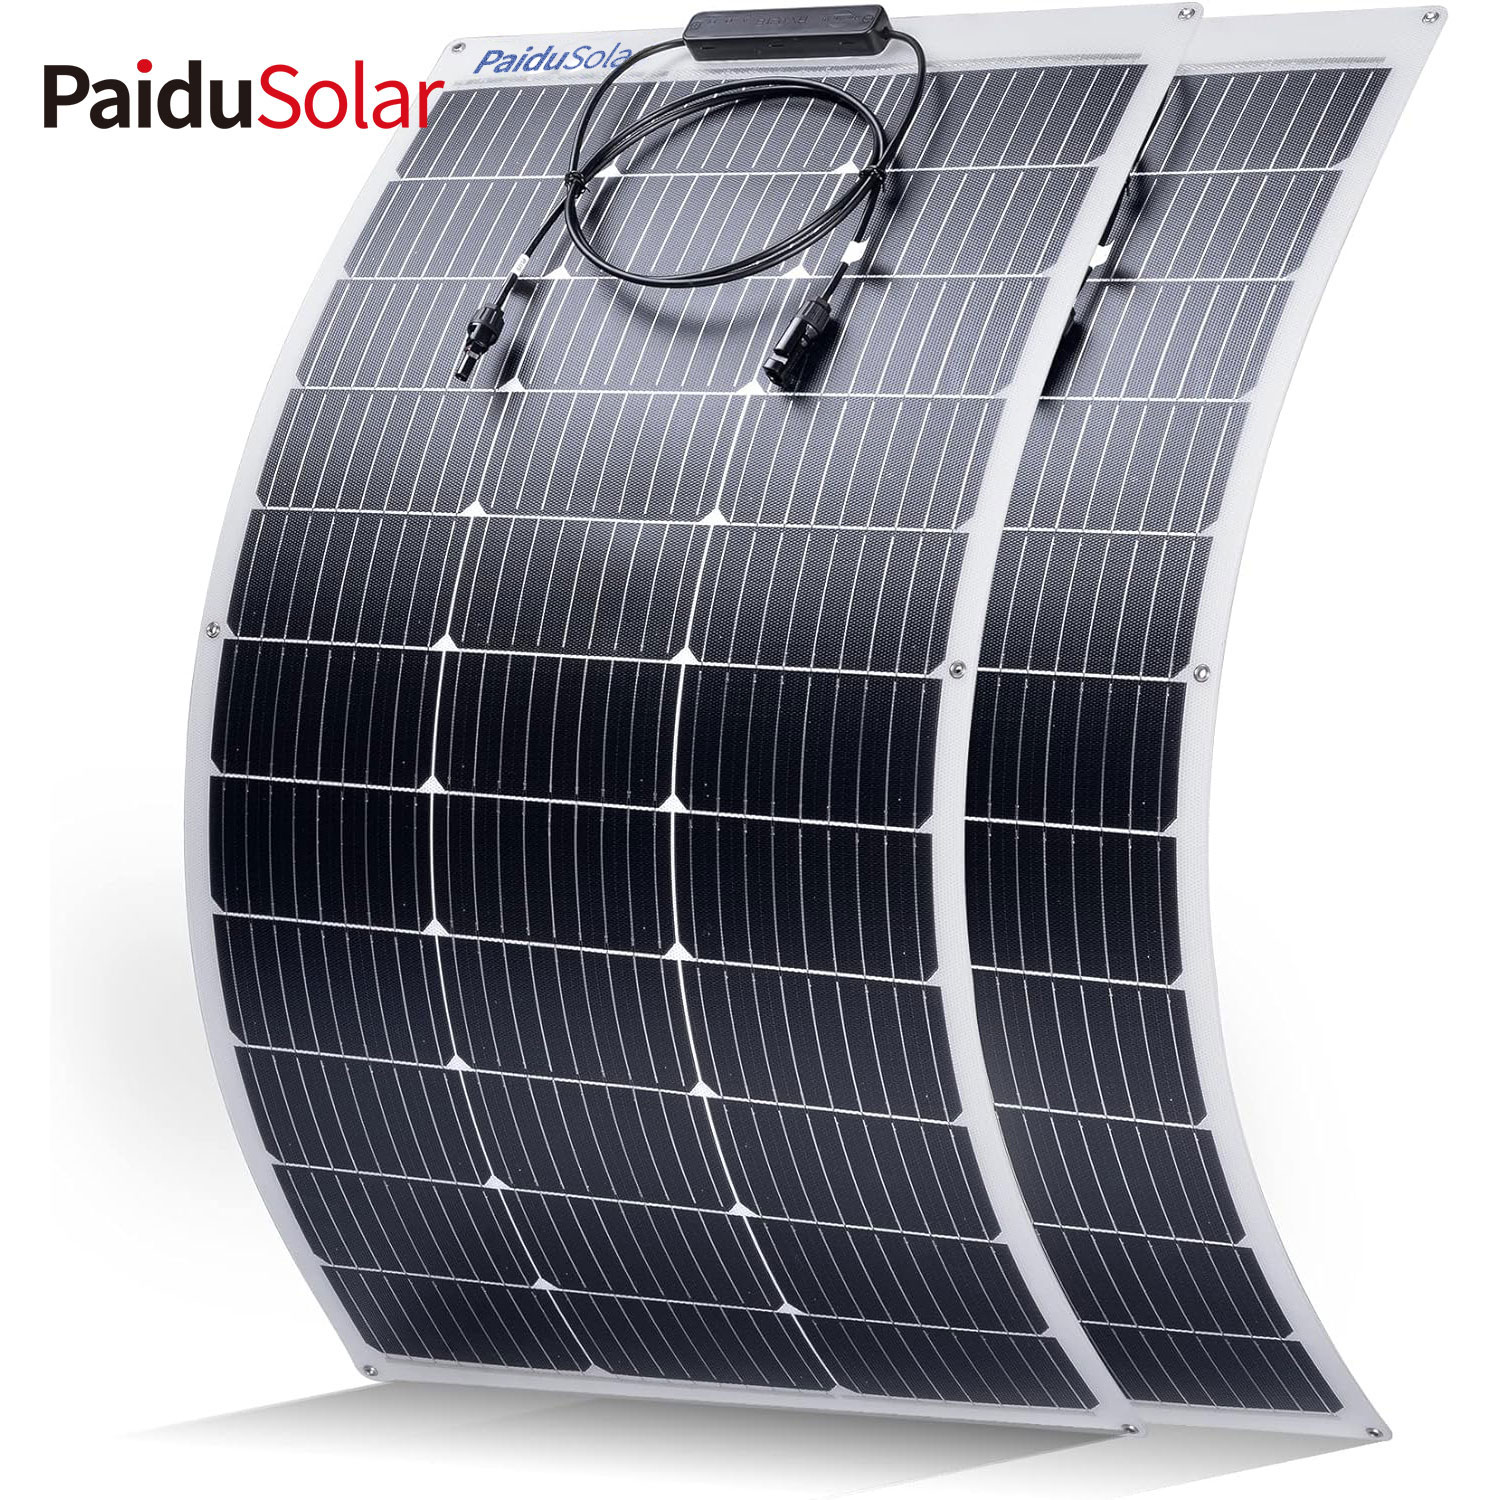 PaiduSolar Panel solar semiflexible de 100 W y 12 V para vehículos recreativos marinos, remolques, barcos, cabinas, furgonetas